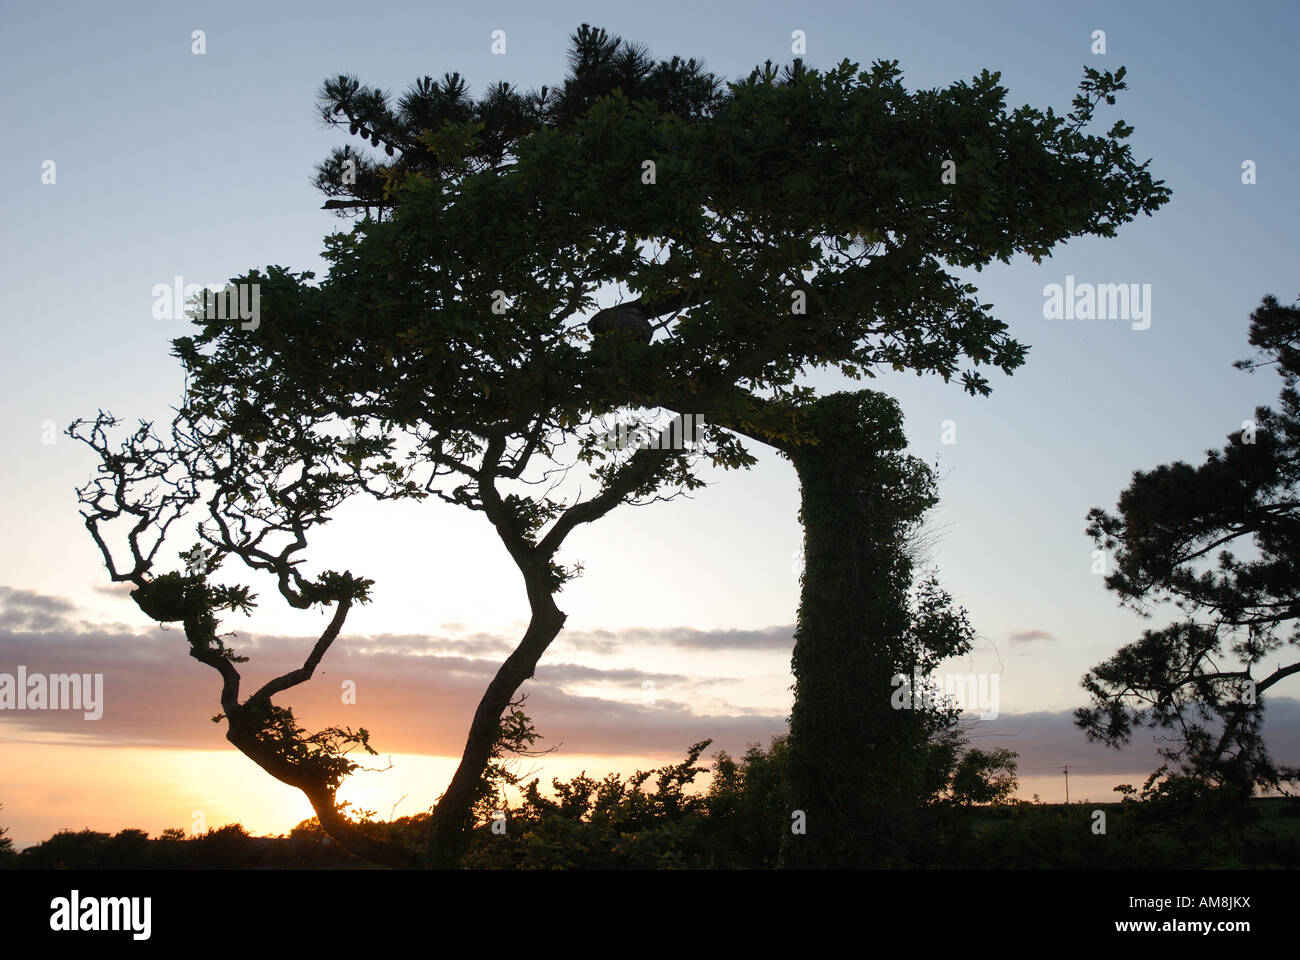 Cornish Sunset golden sky derrière silhouette d'arbres balayés par Banque D'Images